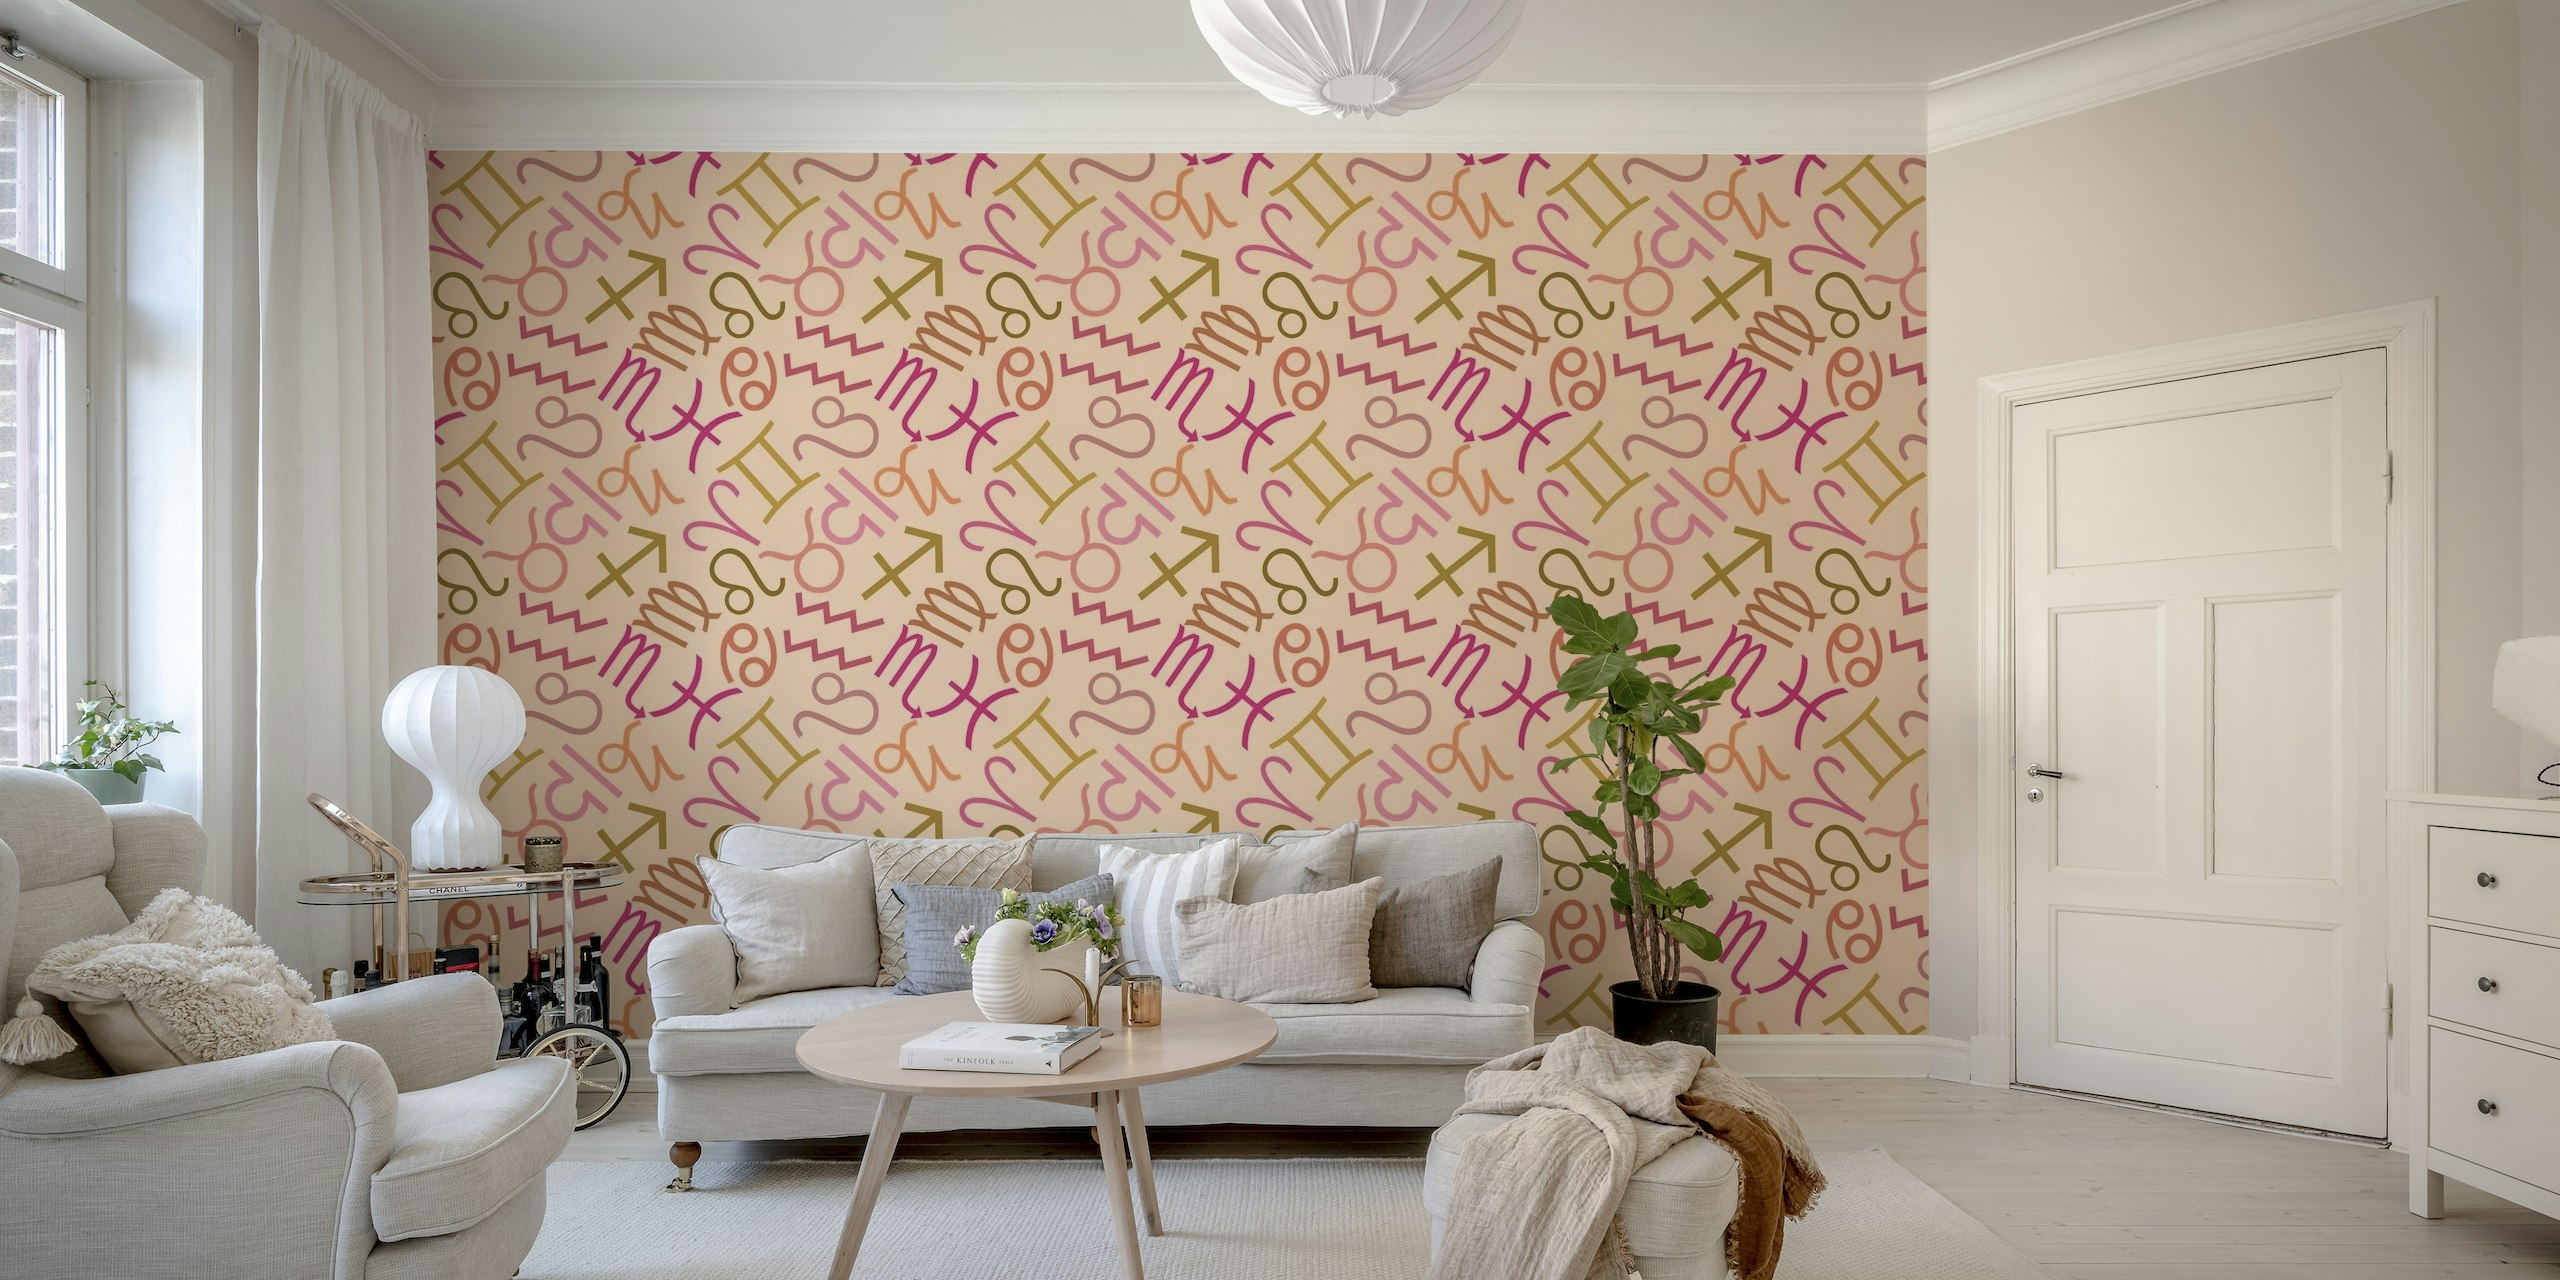 Fotomural vinílico de parede com símbolos do zodíaco em tons rosa quentes para decoração de interiores